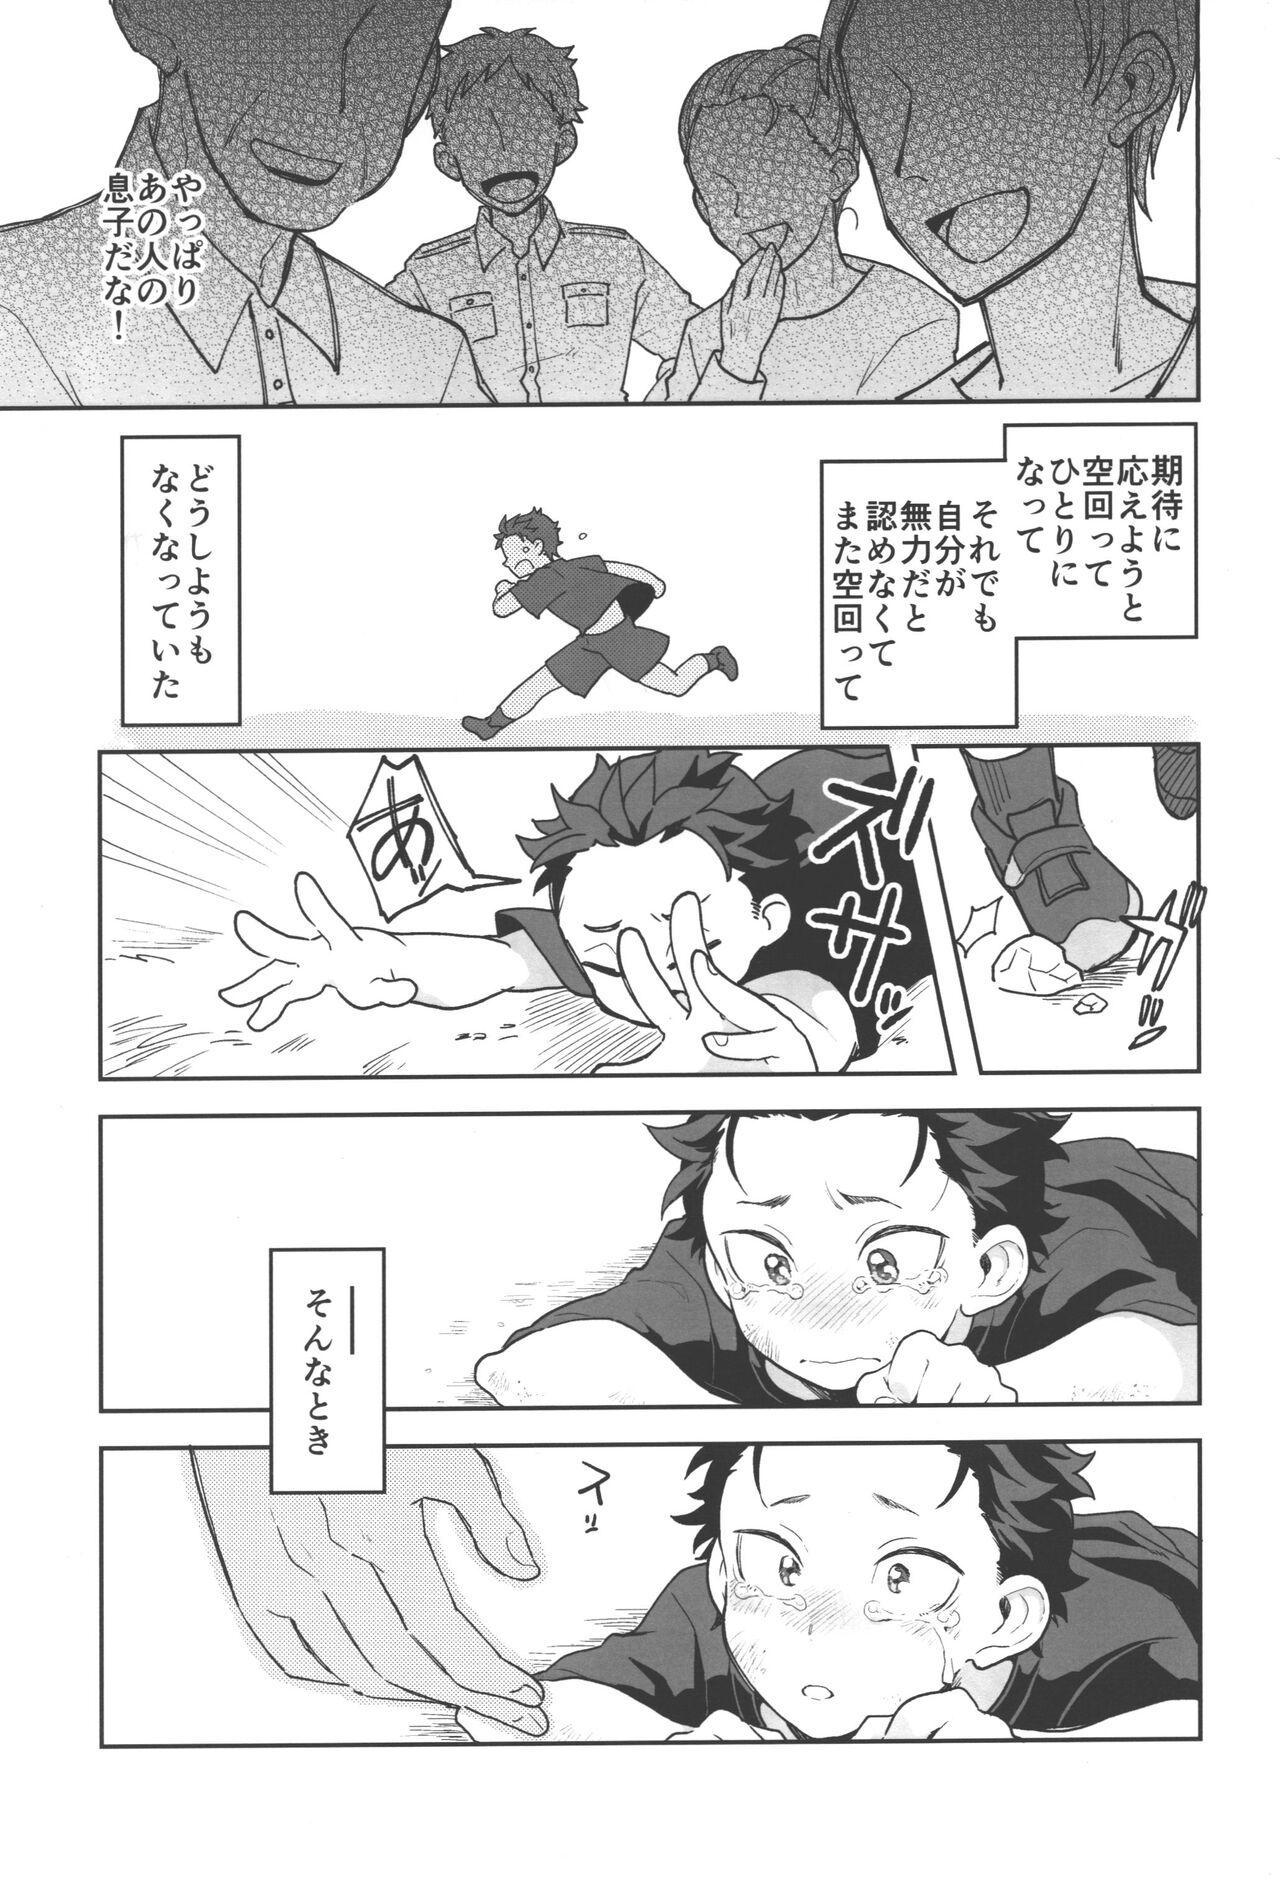 Big Cock Julius Nii-chan to Issho - Re zero kara hajimeru isekai seikatsu Sloppy Blowjob - Page 2